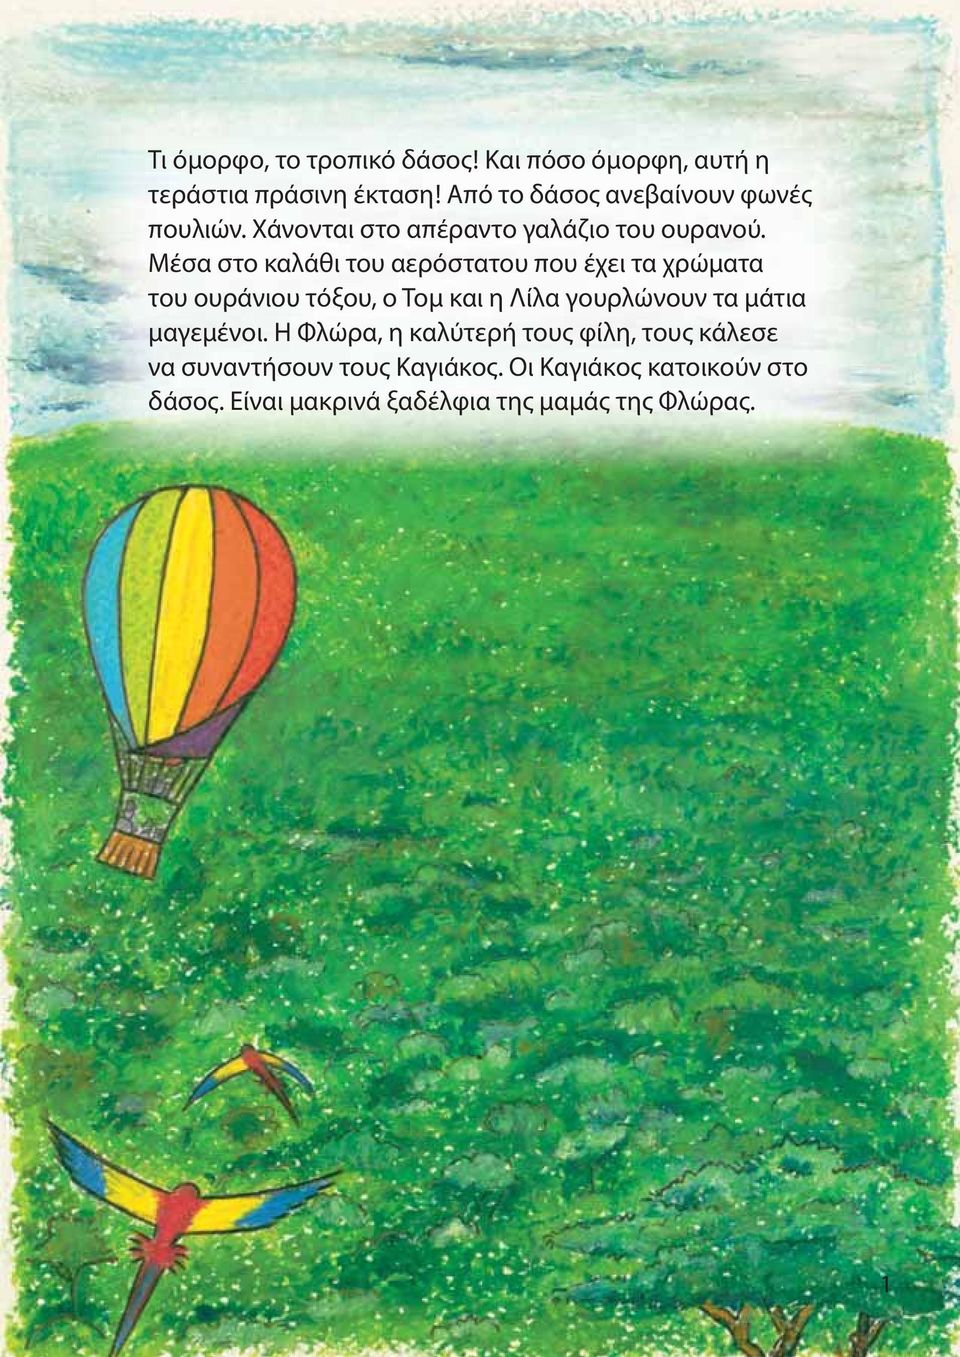 Μέσα στο καλάθι του αερόστατου που έχει τα χρώματα του ουράνιου τόξου, ο Τομ και η Λίλα γουρλώνουν τα μάτια